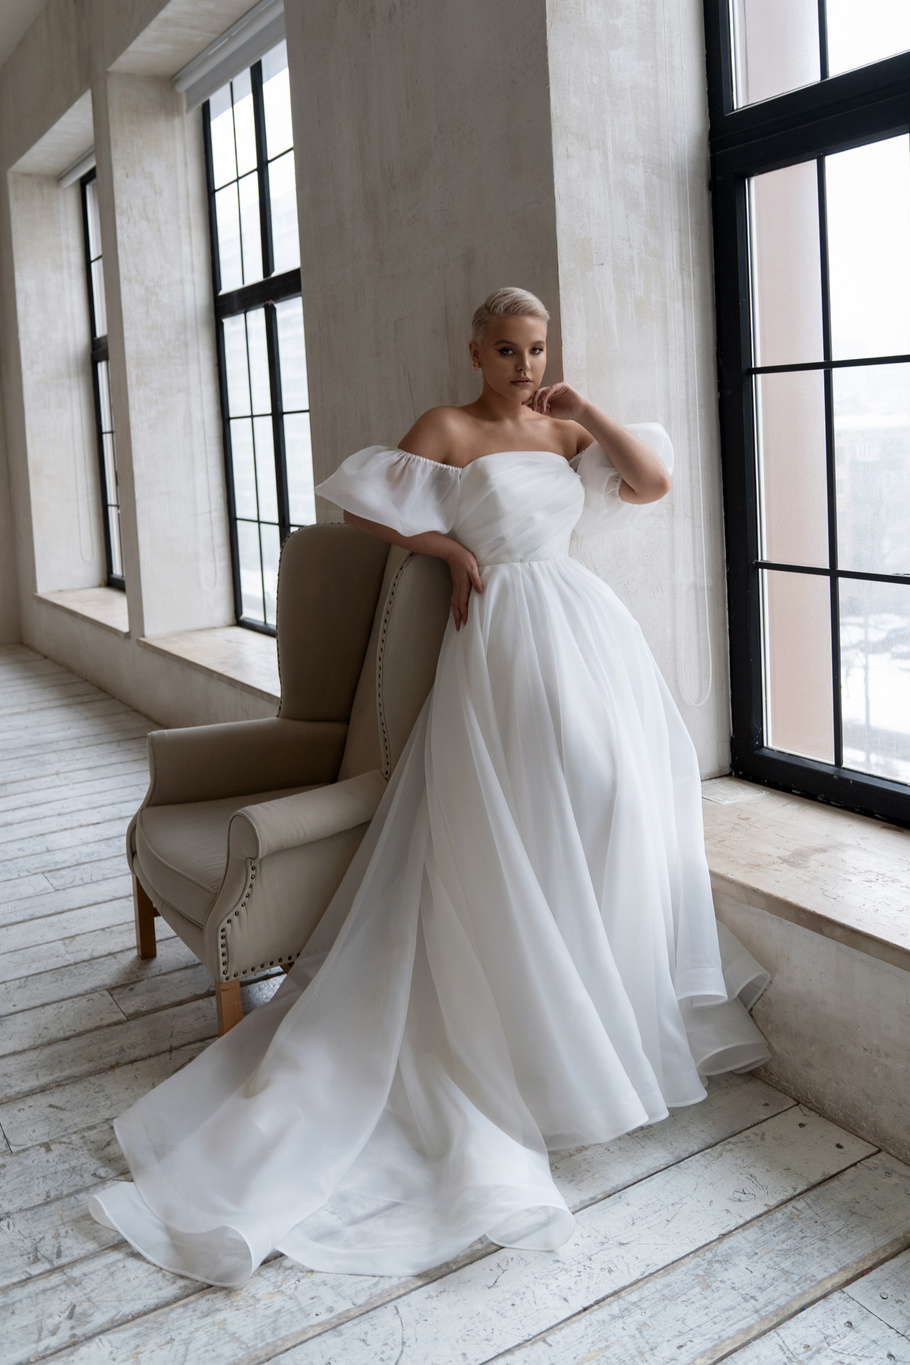 Свадебное платье «Орита плюс сайз» Марта — купить в Санкт-Петербурге платье Орита из коллекции 2021 года